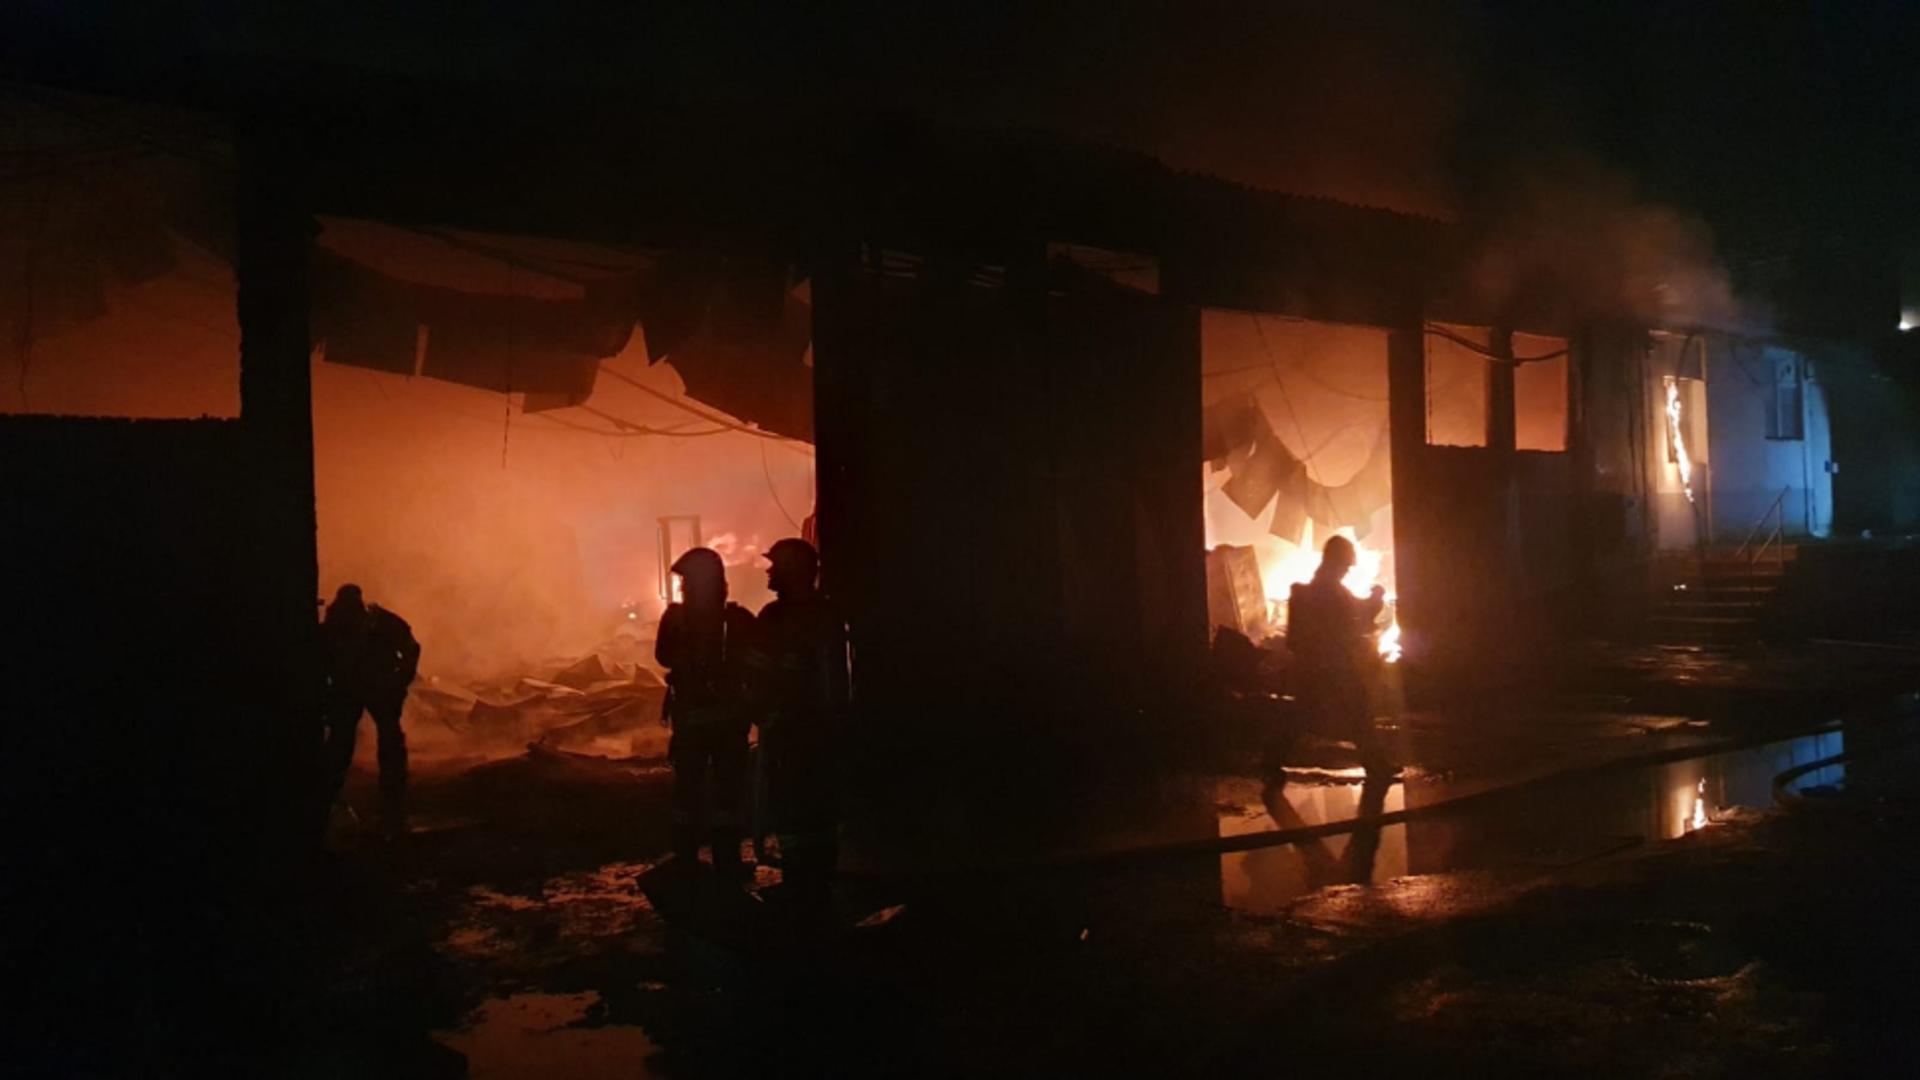 Umn depozit de mase palstice din București a luat foc. Foto/ISU